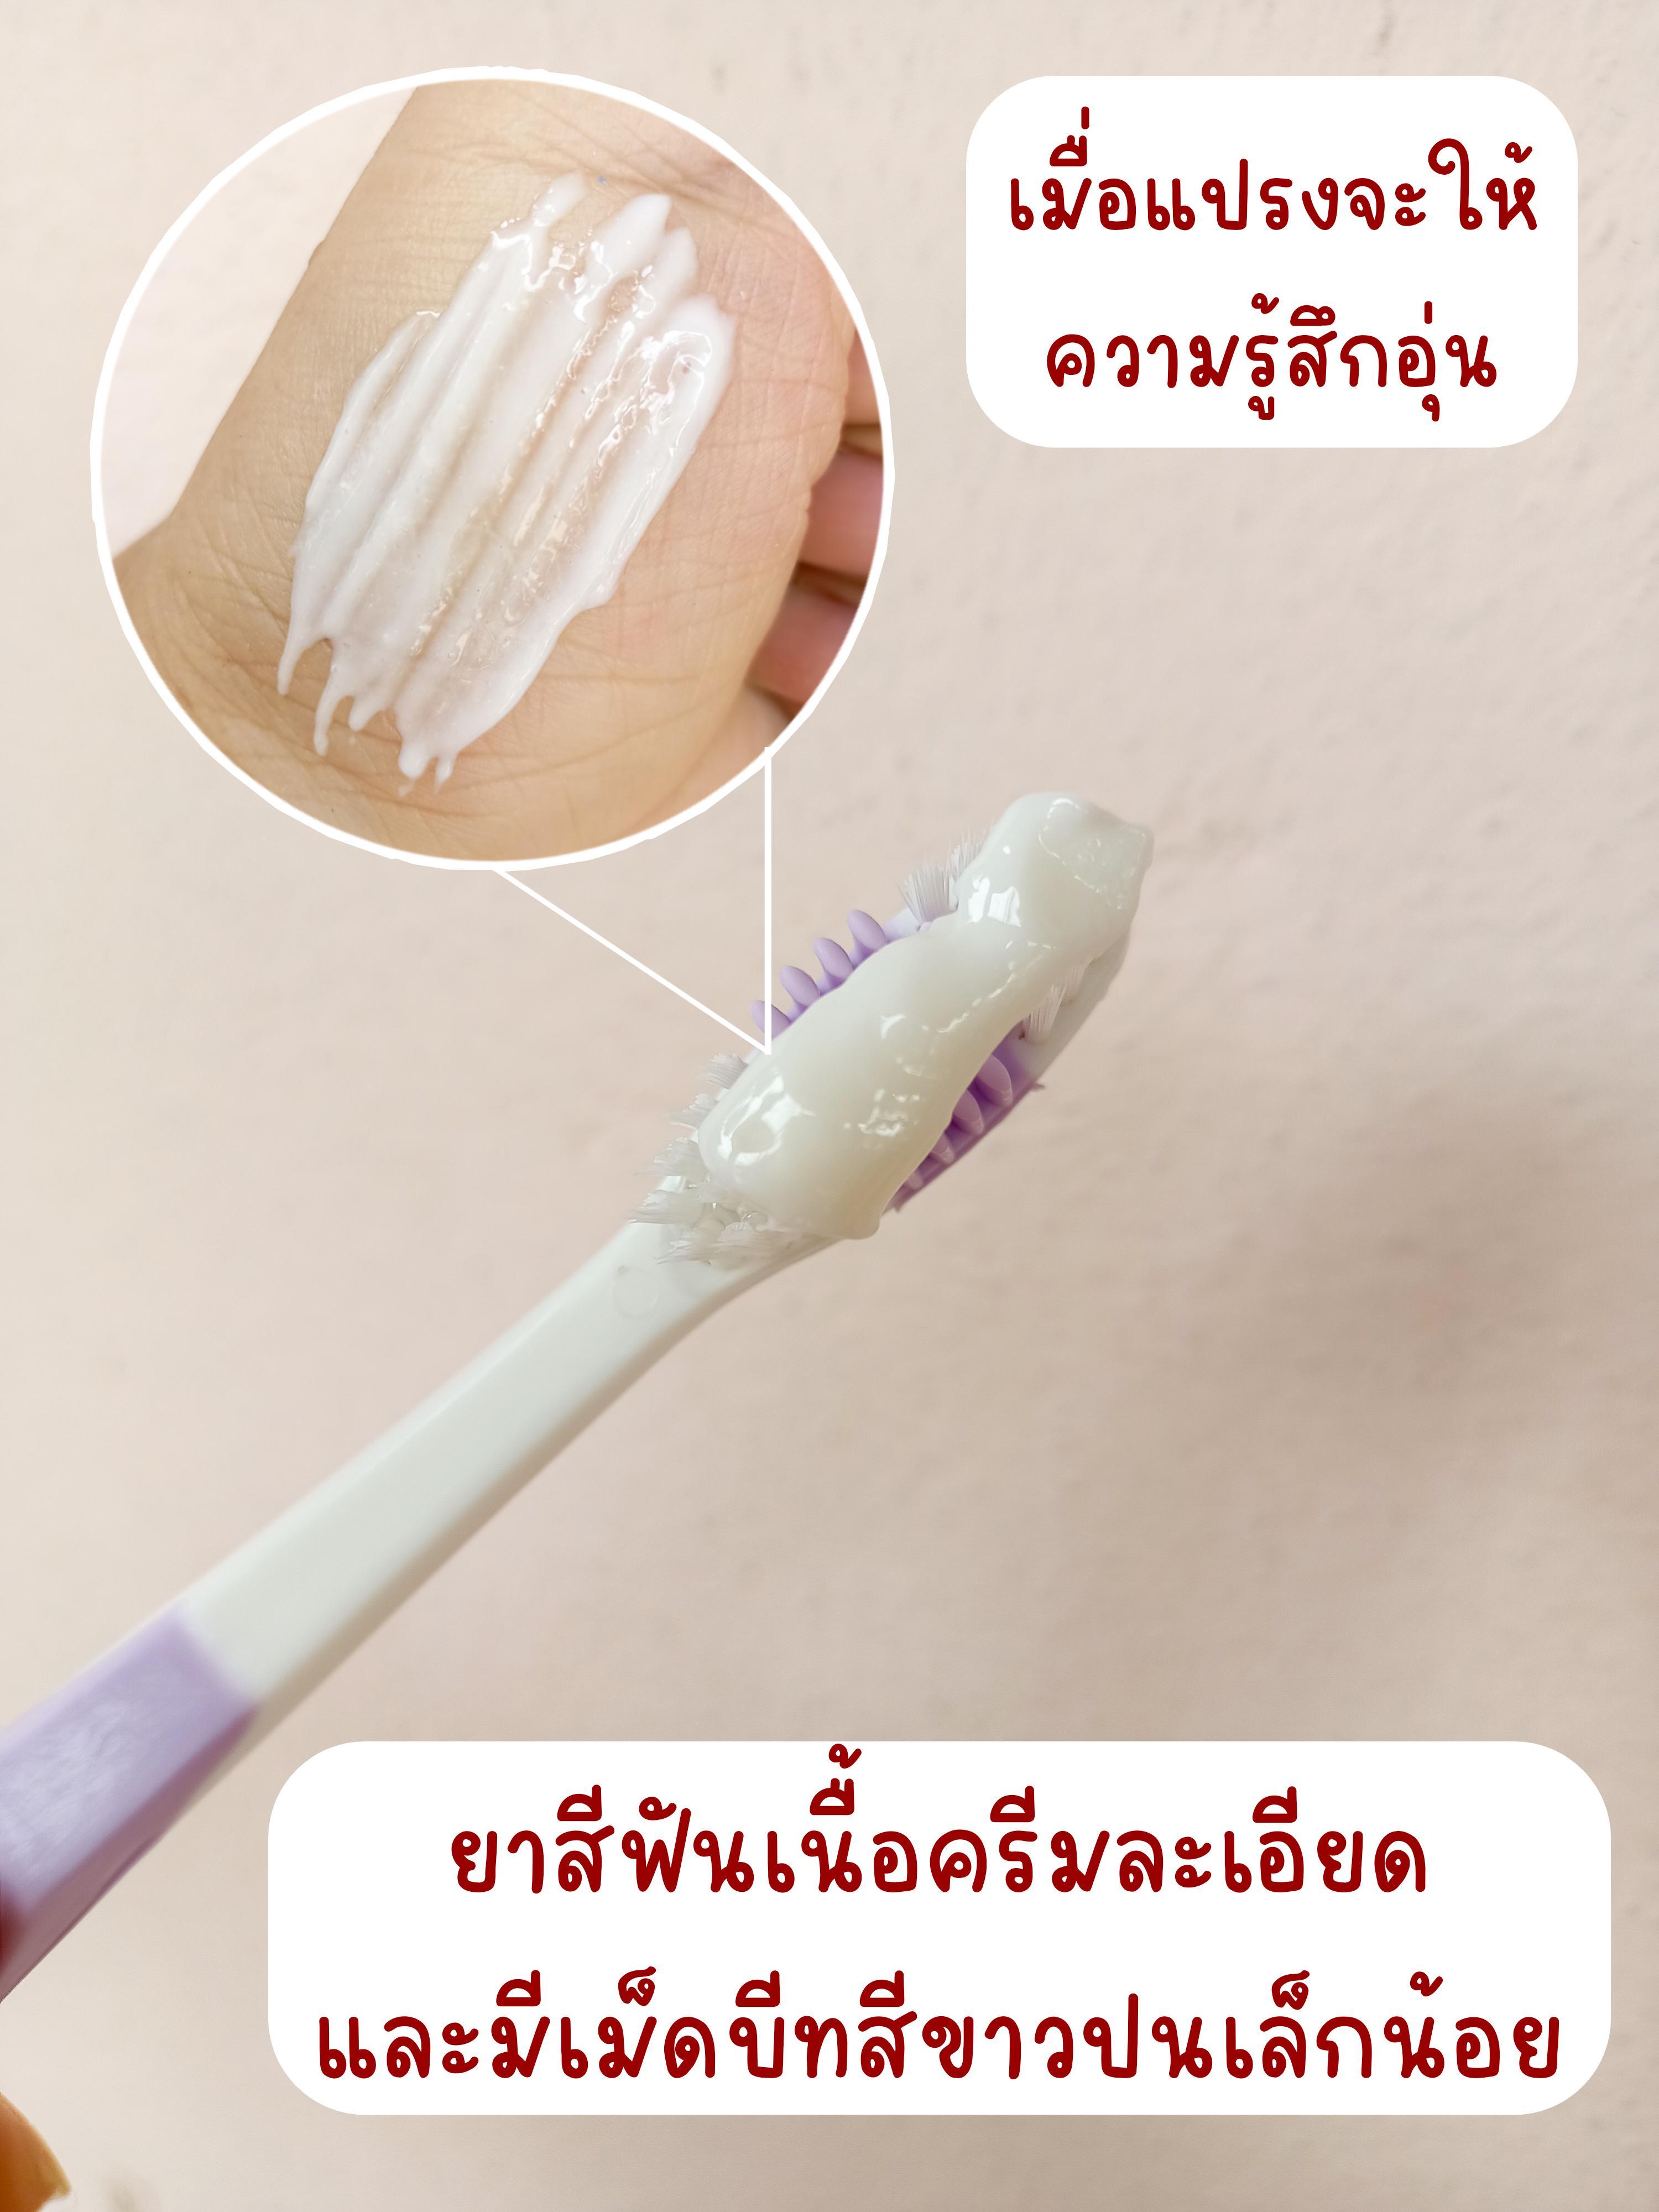 ภาพหน้าปก ยาสีฟันนวัตกรรมใหม่ ยาสีฟันสูตรฟันขาว คอลเกต อ๊อพติค ไวท์ โอทู จึ้งมาก ที่:2